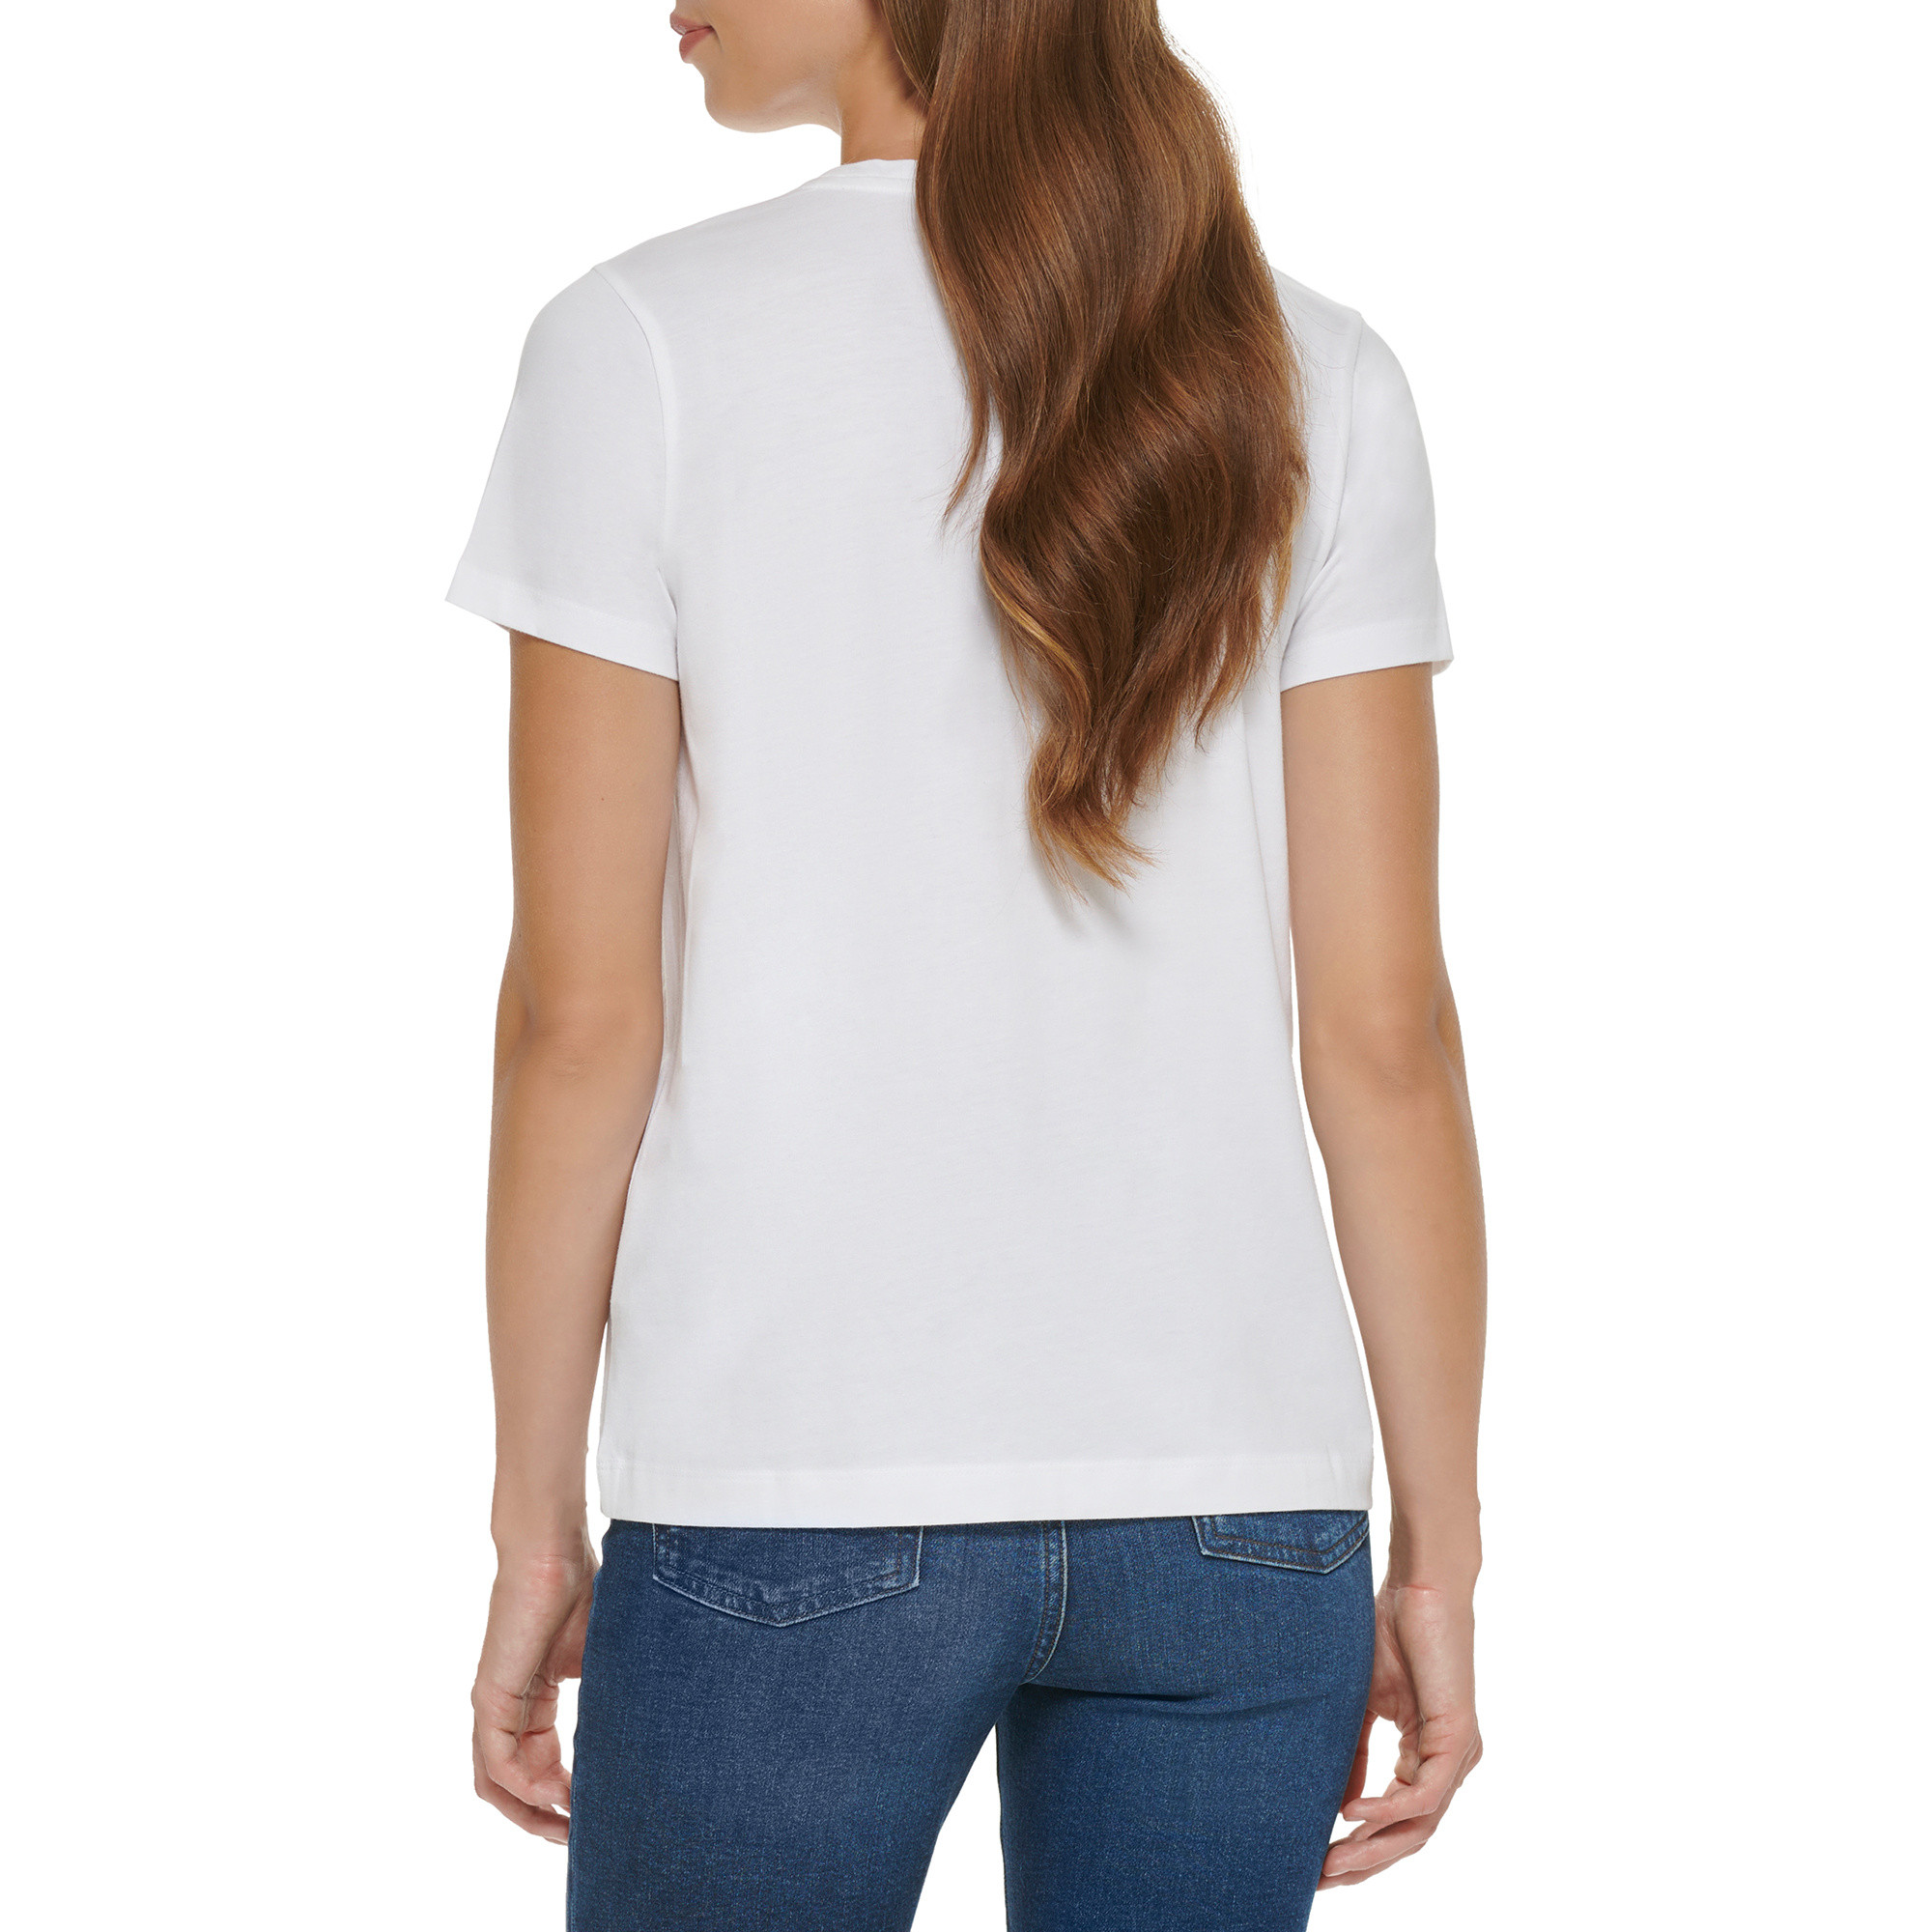 DKNY - Logo T-Shirt, White, large image number 5